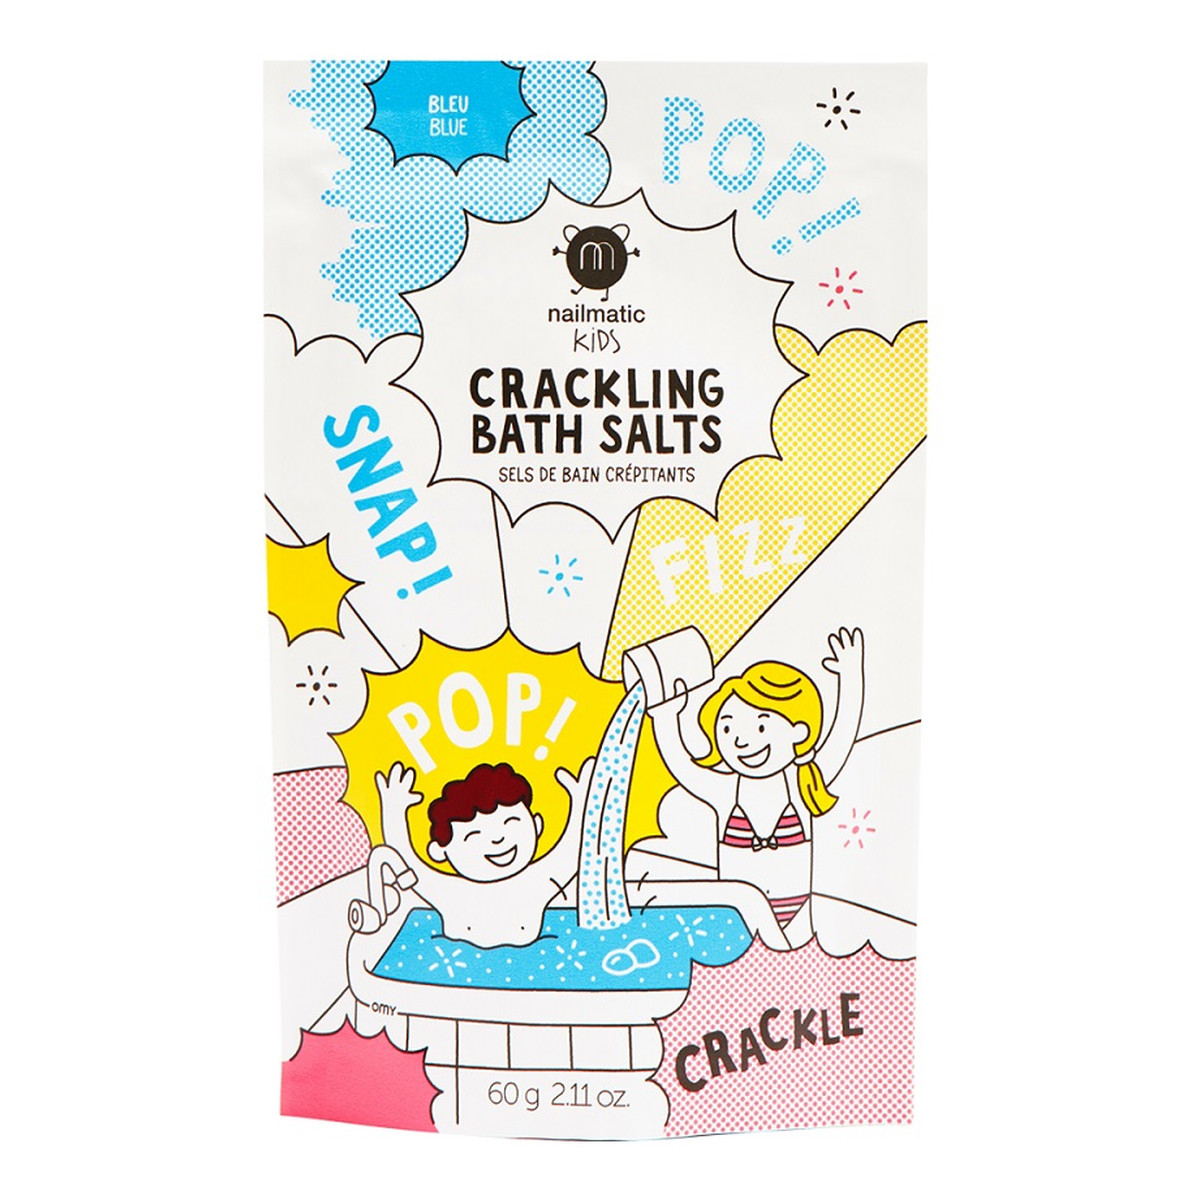 Nailmatic Kids crackling bath salts musująca sól do kąpieli dla dzieci blue 60g